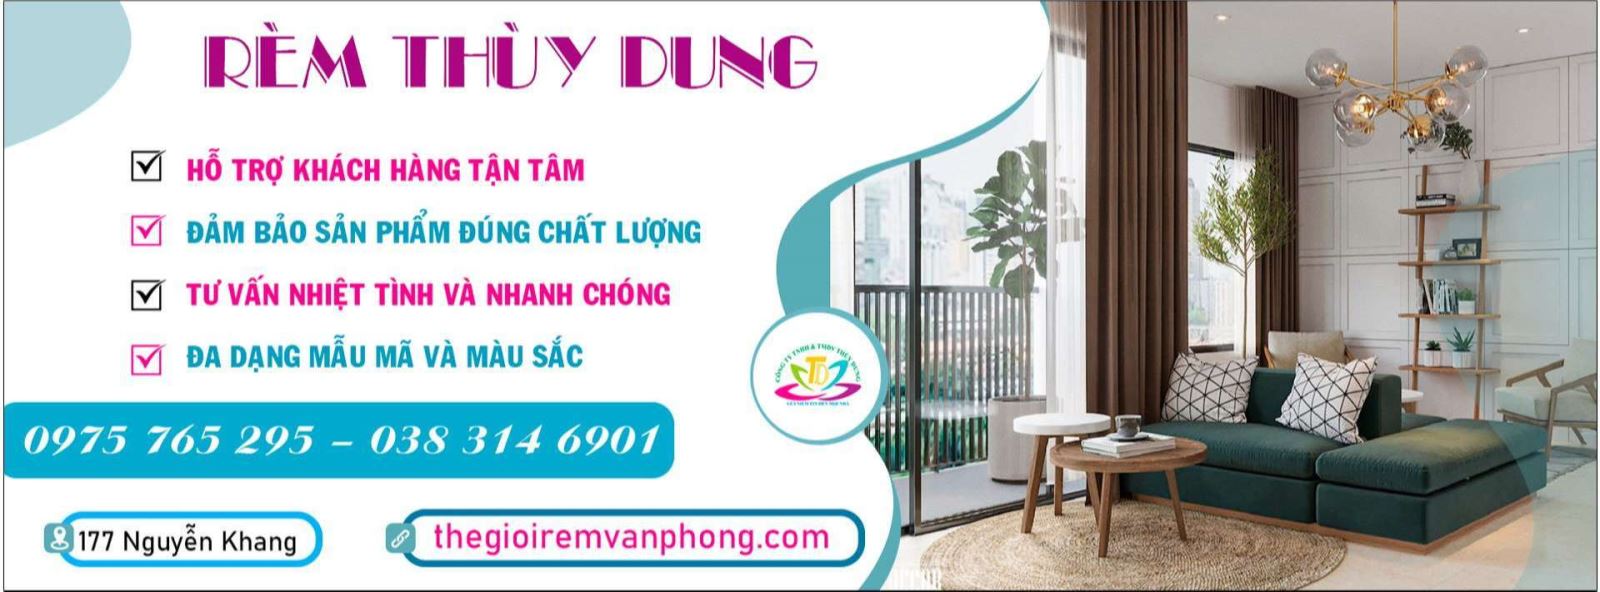 Các mẫu rèm cửa đẹp phòng khách tại Thanh Xuân, Hà Nội 0975765295